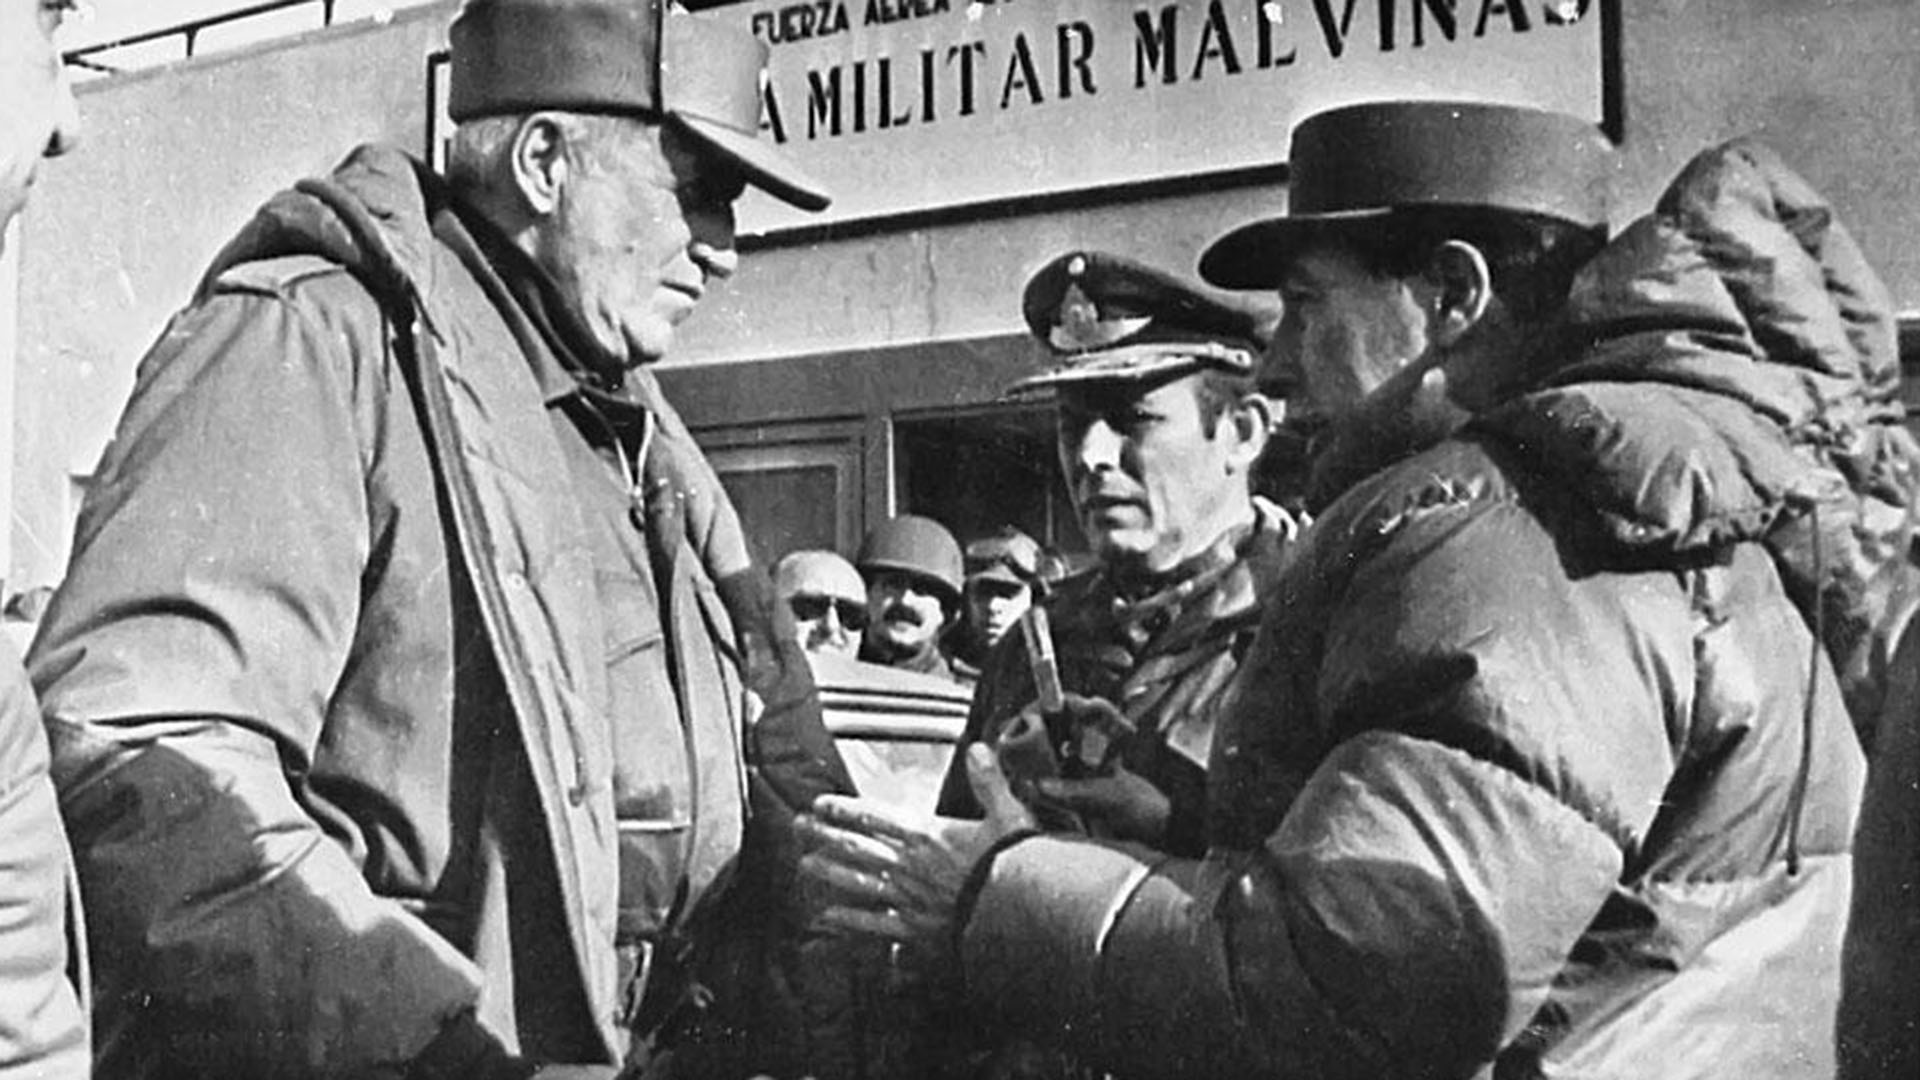 La errada orden militar de Galtieri en su viaje a Malvinas y la negociación fracasada que pudo evitar la guerra